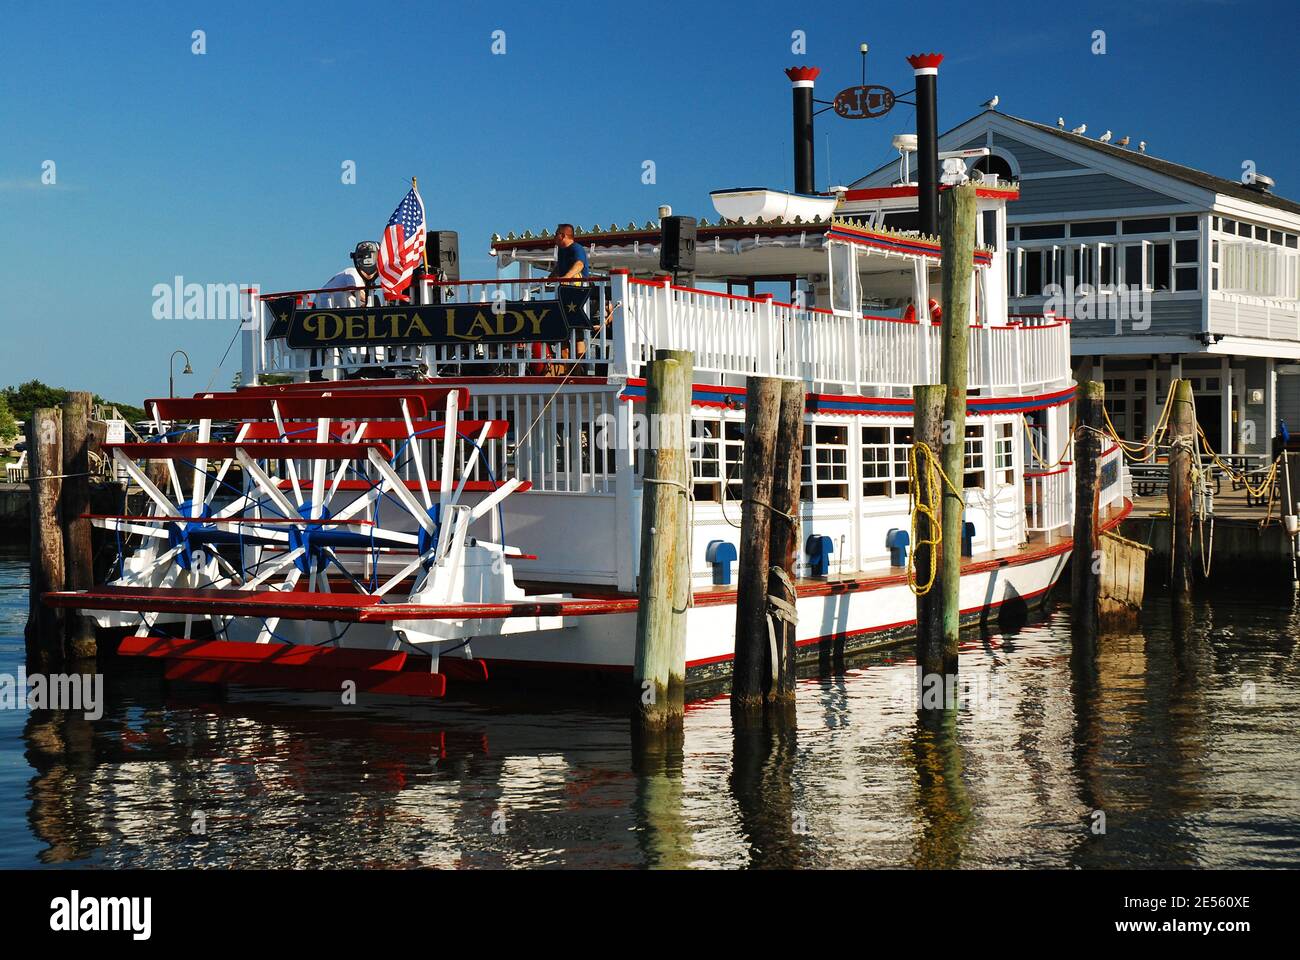 La Delta Lady, una replica barca a pale di vapore si trova in un molo Foto Stock